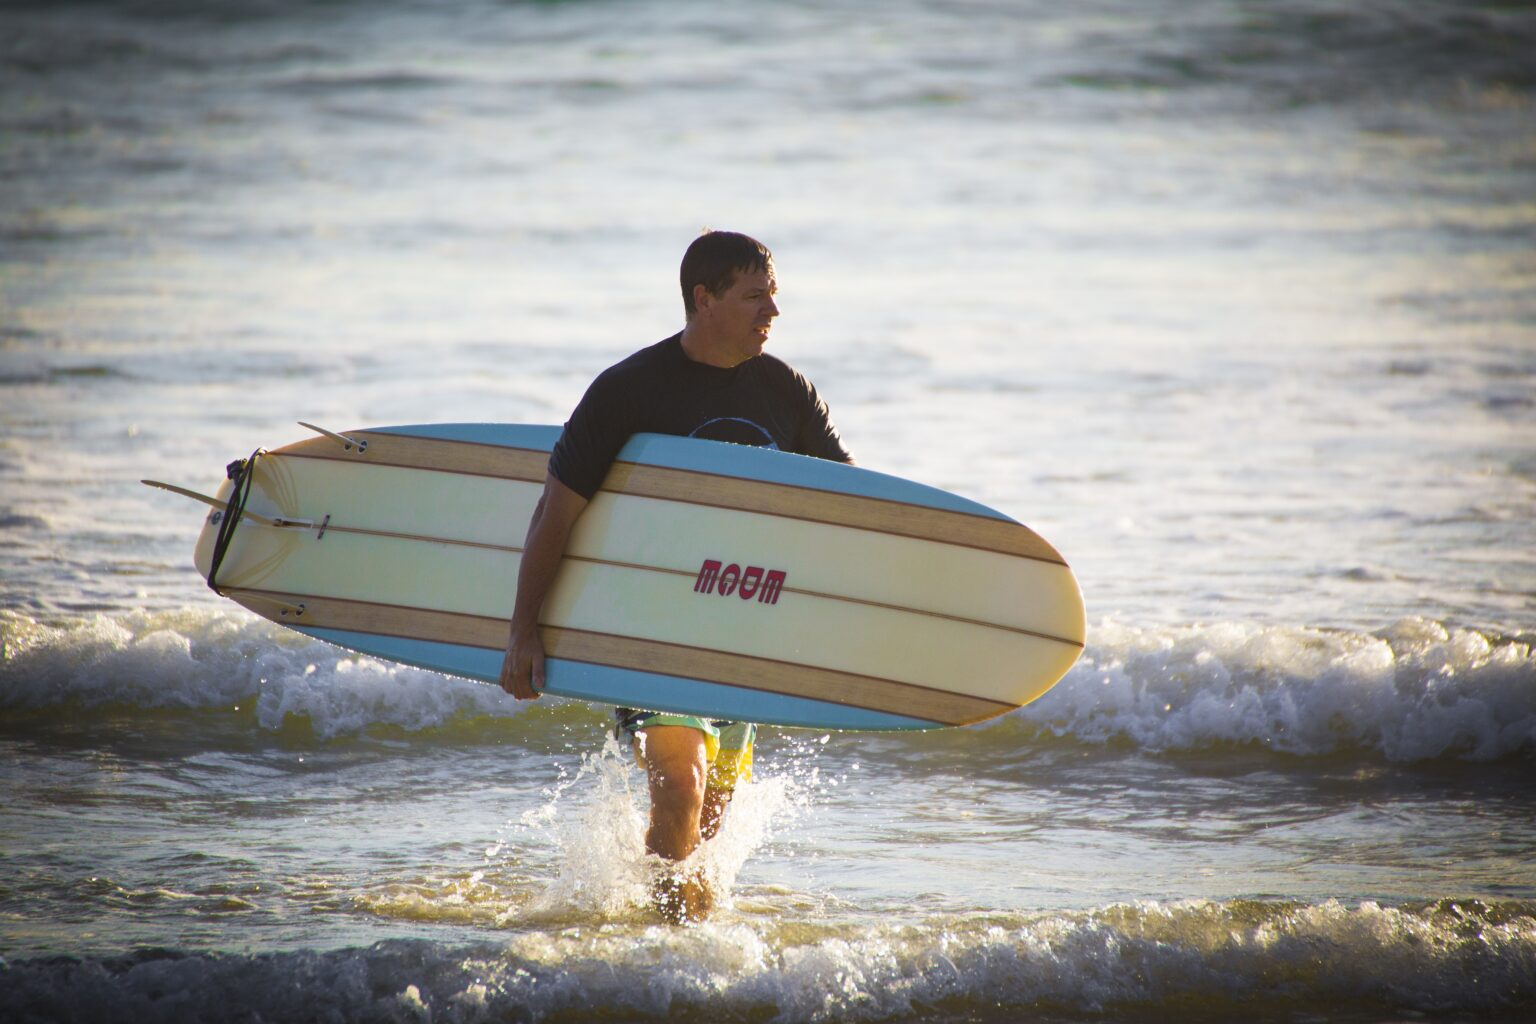 Surfer carrying a longboard surfboard